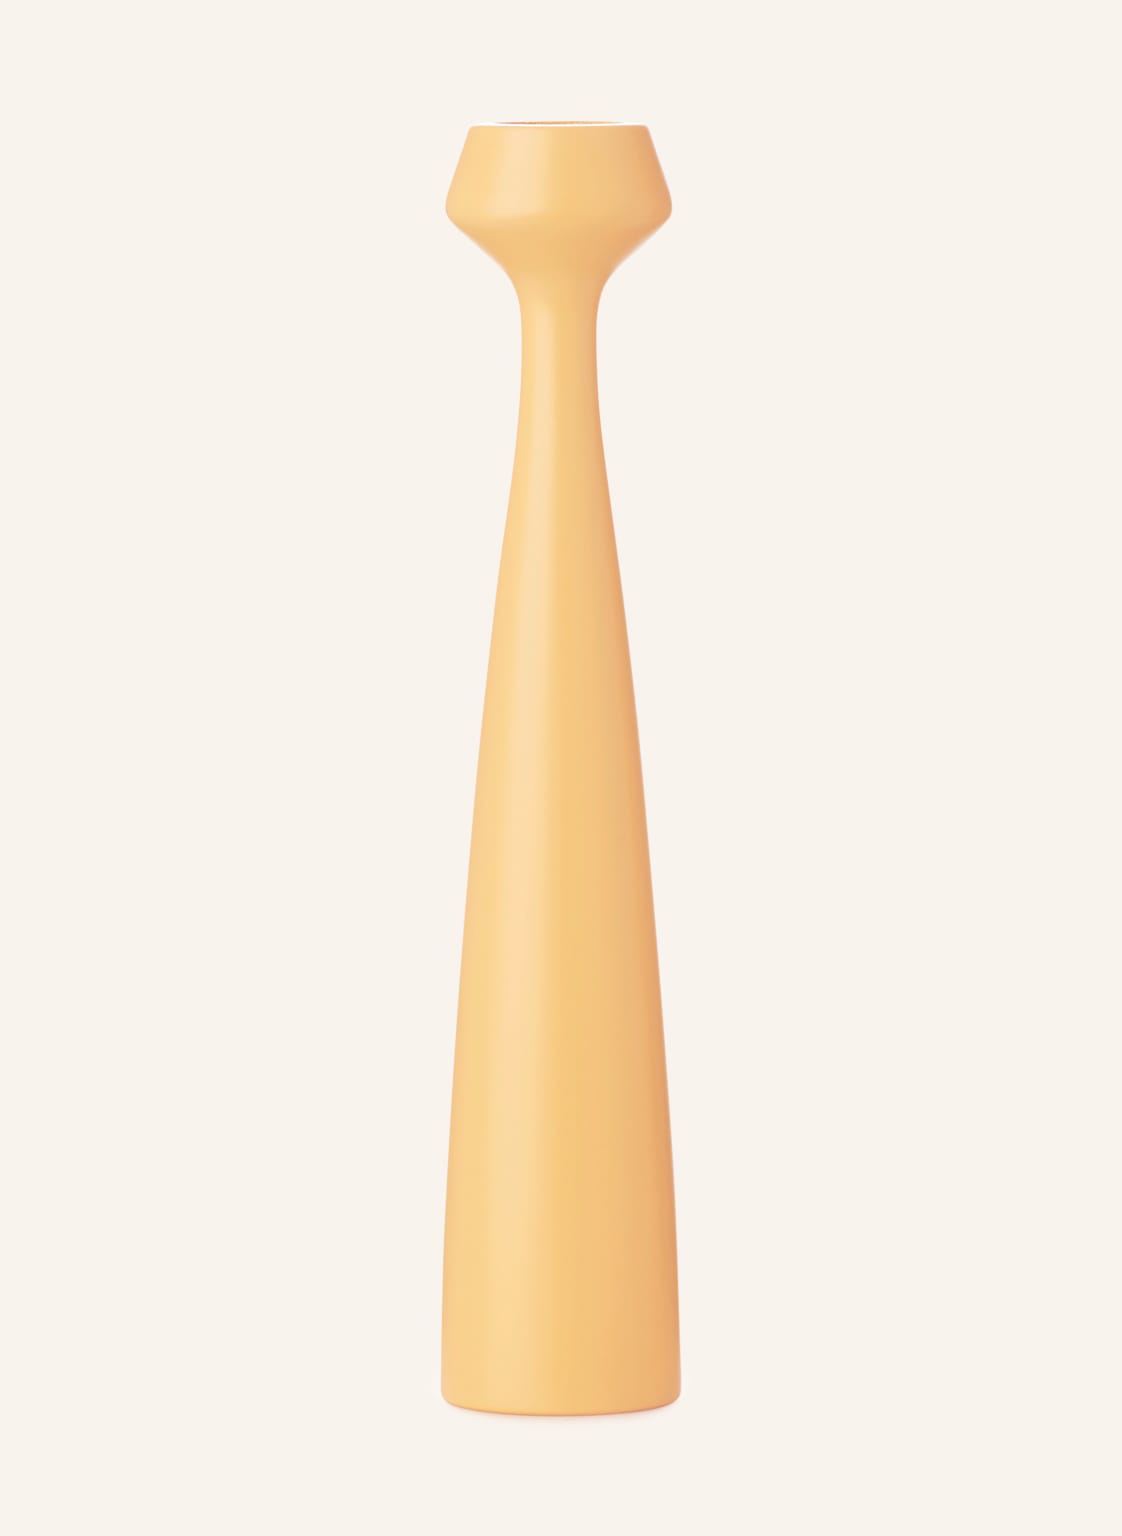 Image of Applicata Kerzenhalter Blossom gelb